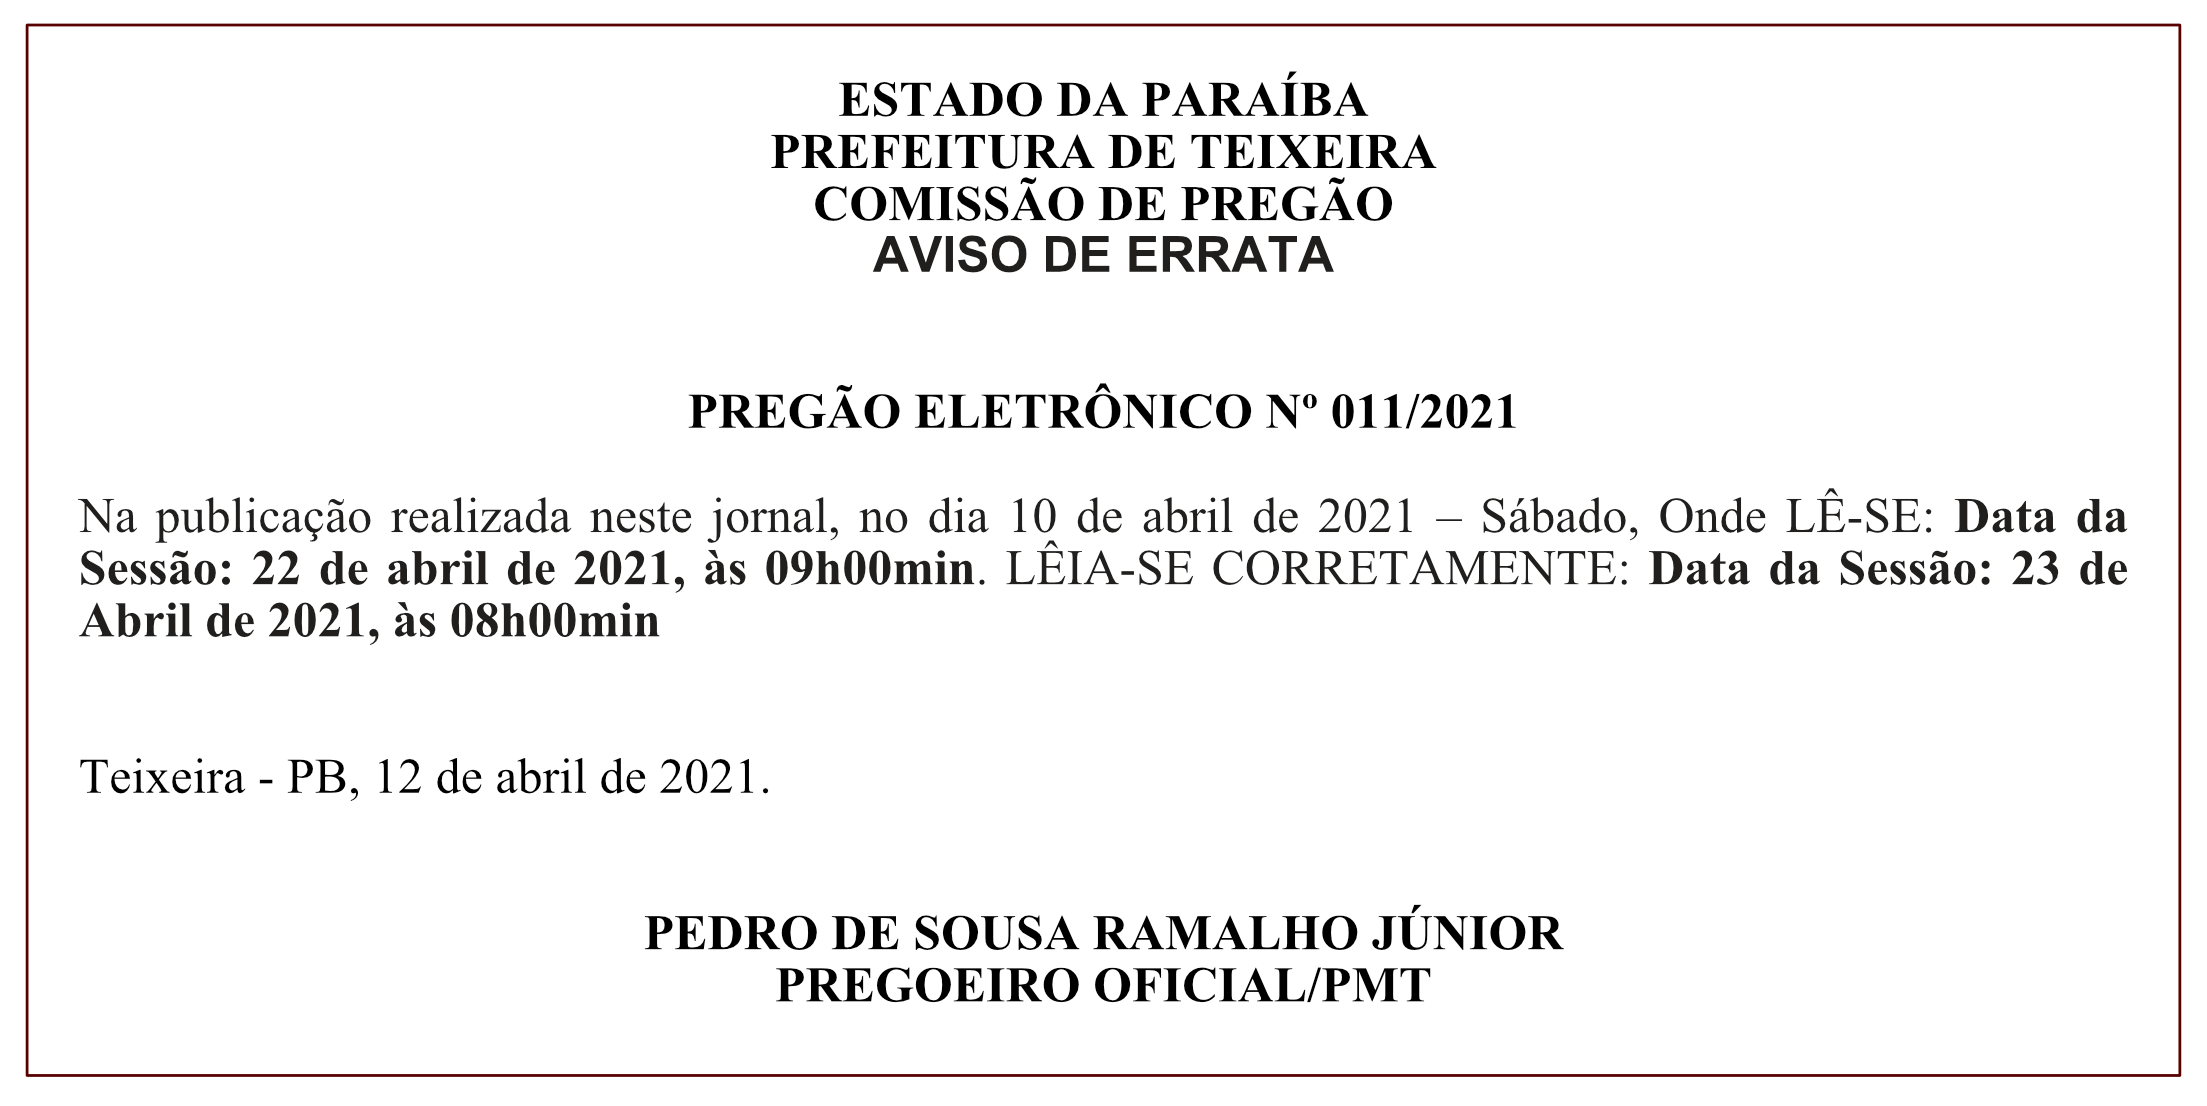 PREFEITURA DE TEIXEIRA – COMISSÃO DE PREGÃO – AVISO DE ERRATA – PREGÃO ELETRÔNICO Nº 011/2021